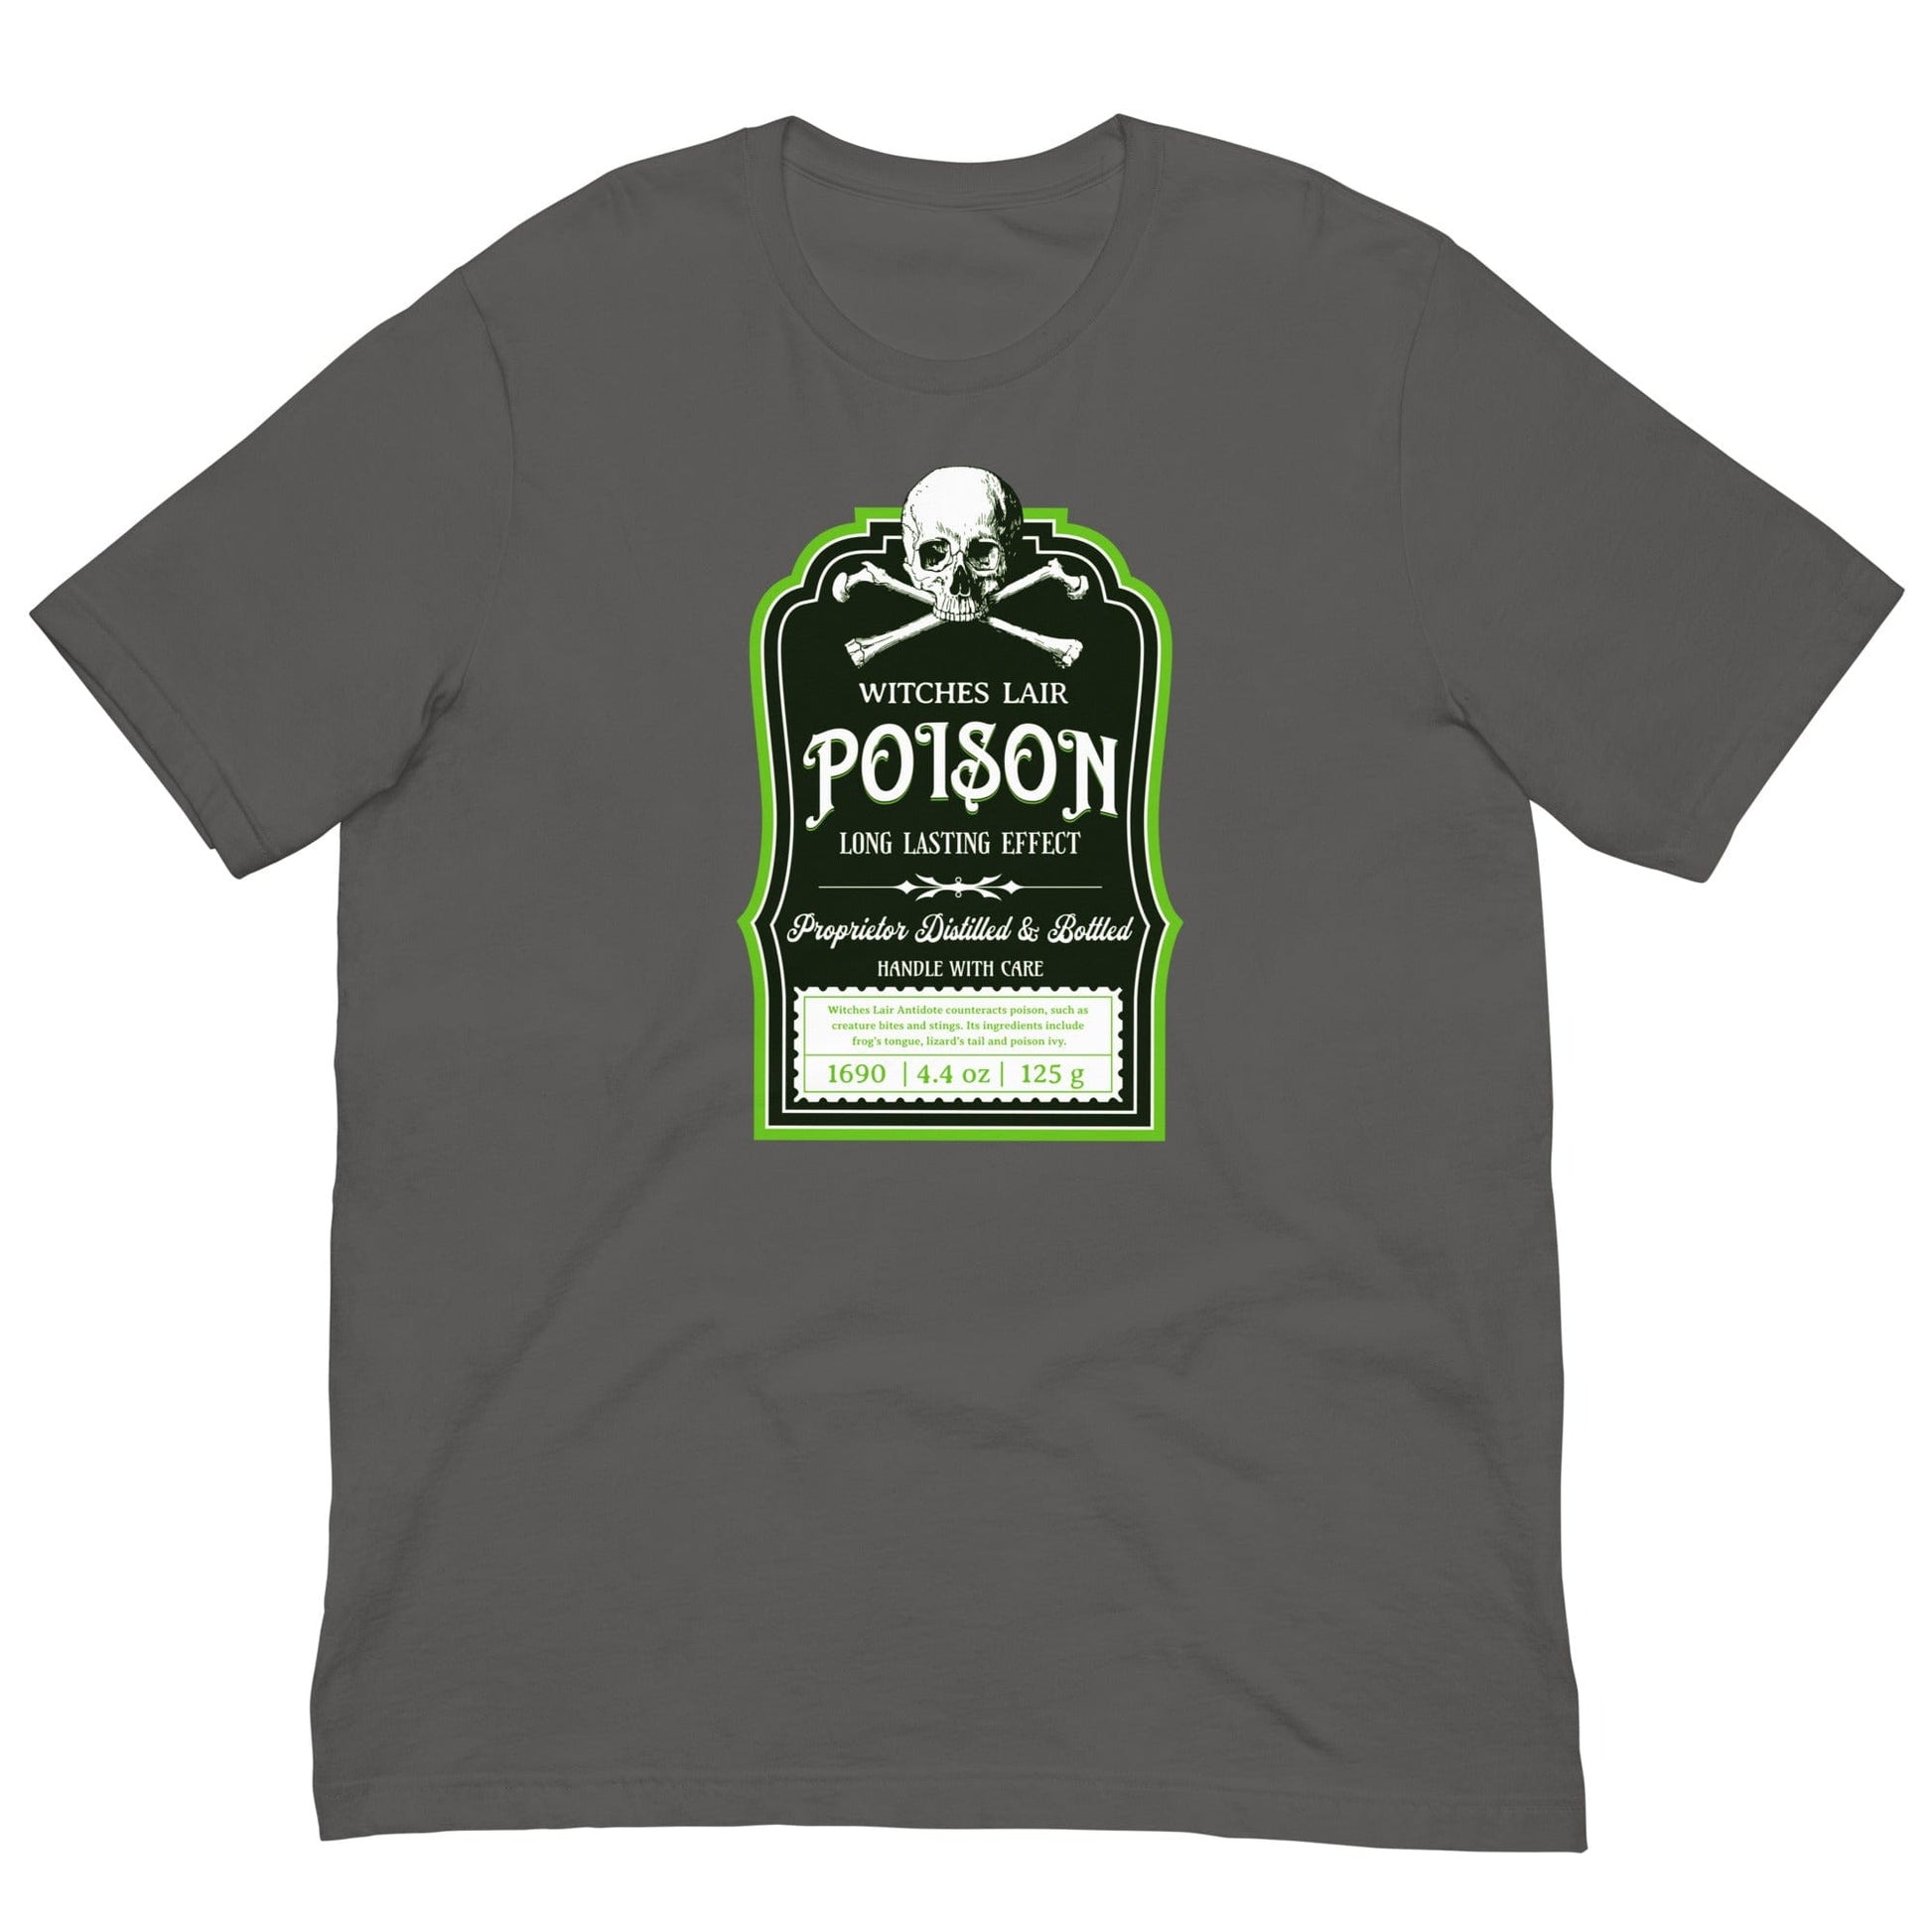 Witches Lair Poison T-shirt Asphalt / S